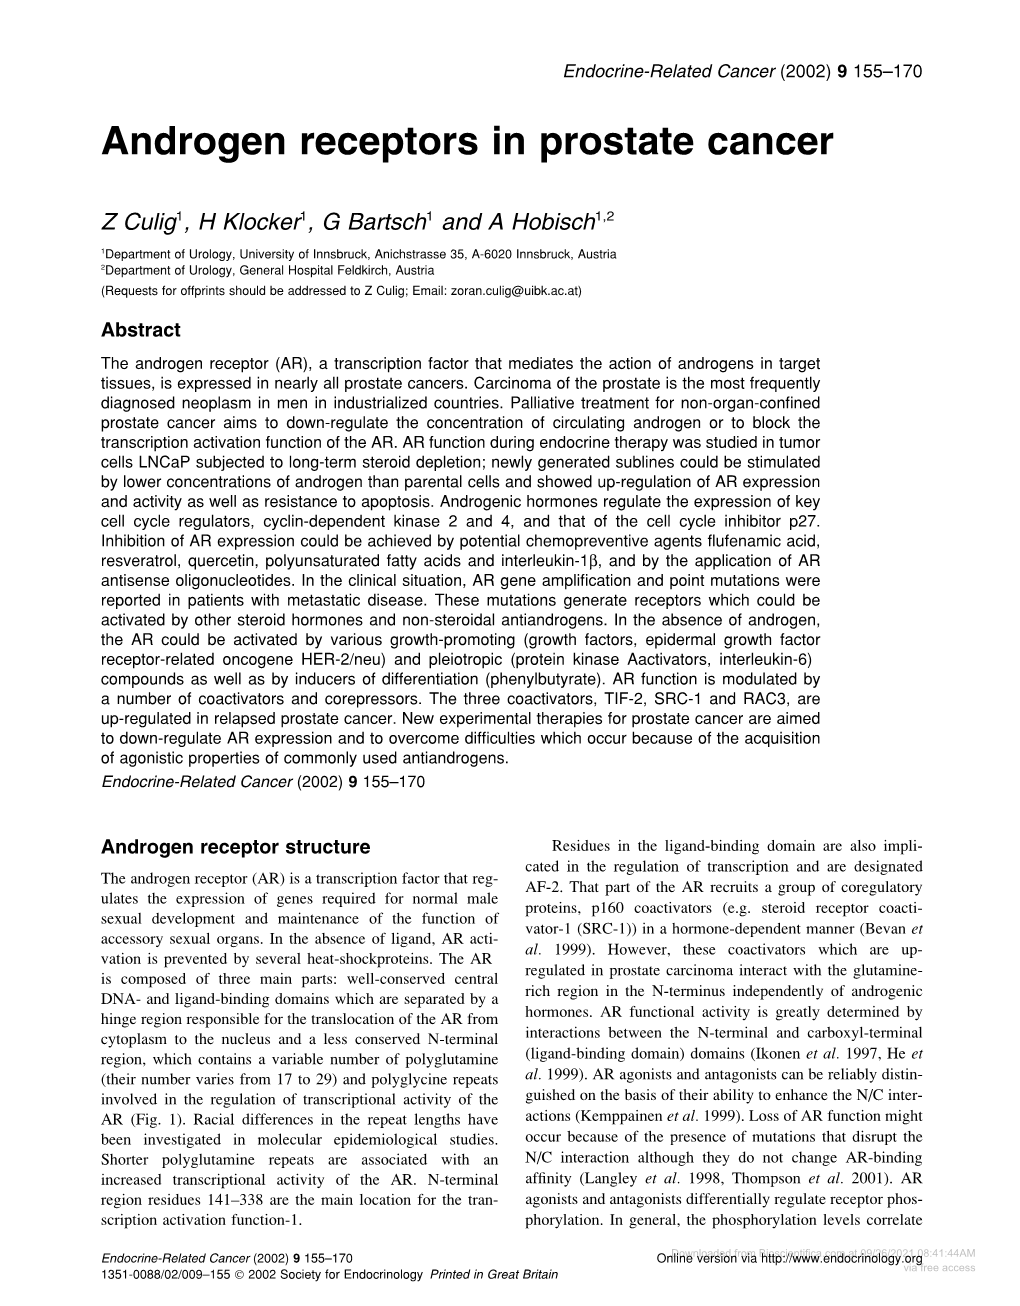 Androgen Receptors in Prostate Cancer